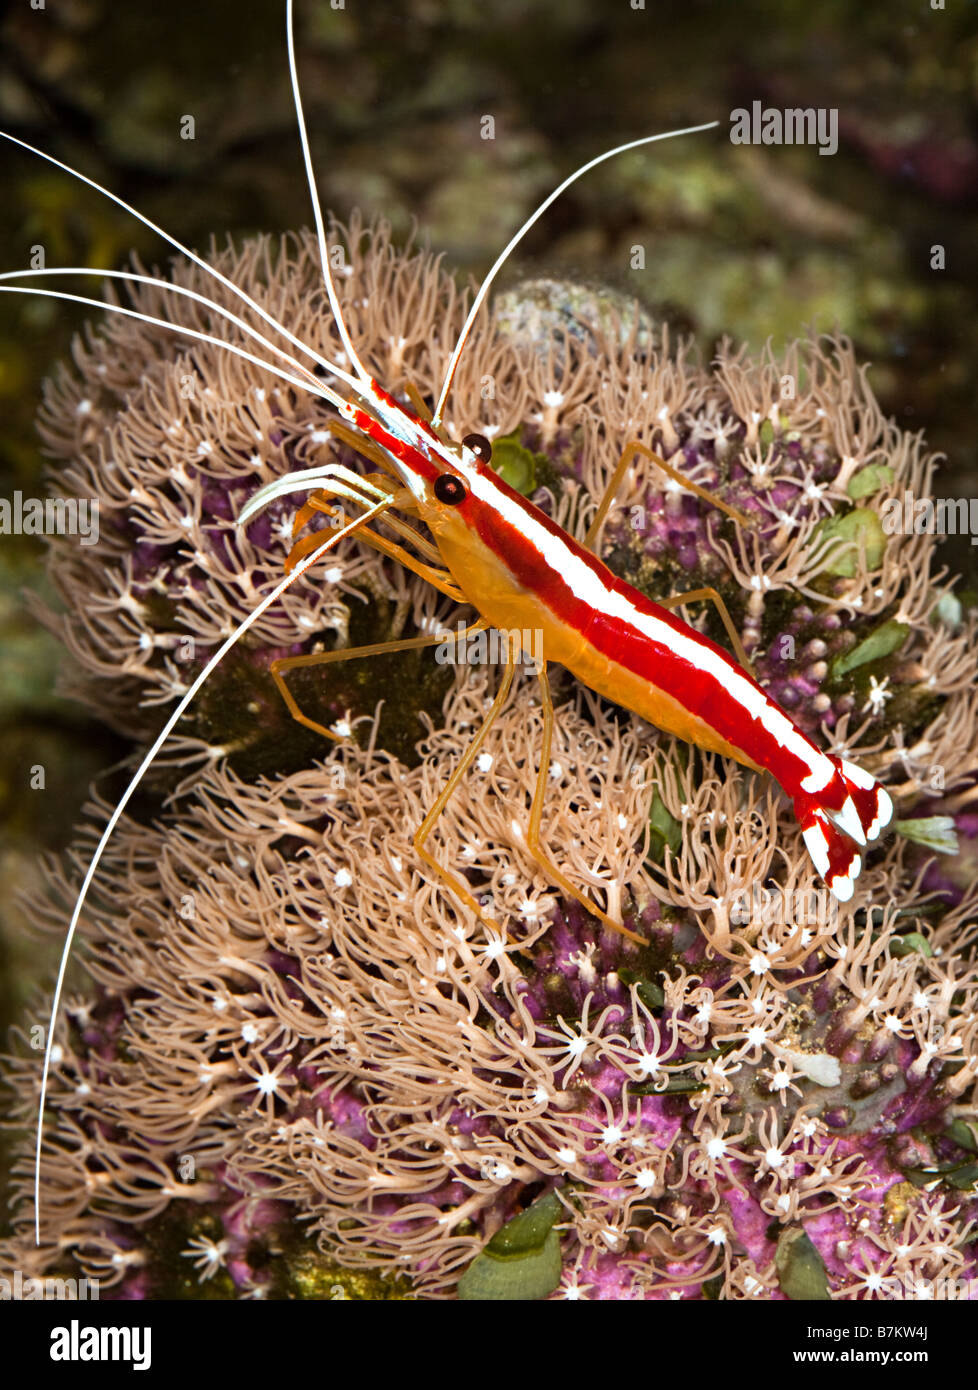 Putzergarnelen Lysmata Amboinensis eine gemeinsame Meerwasseraquarium Spezies auf inkrustieren Koralle Stockfoto